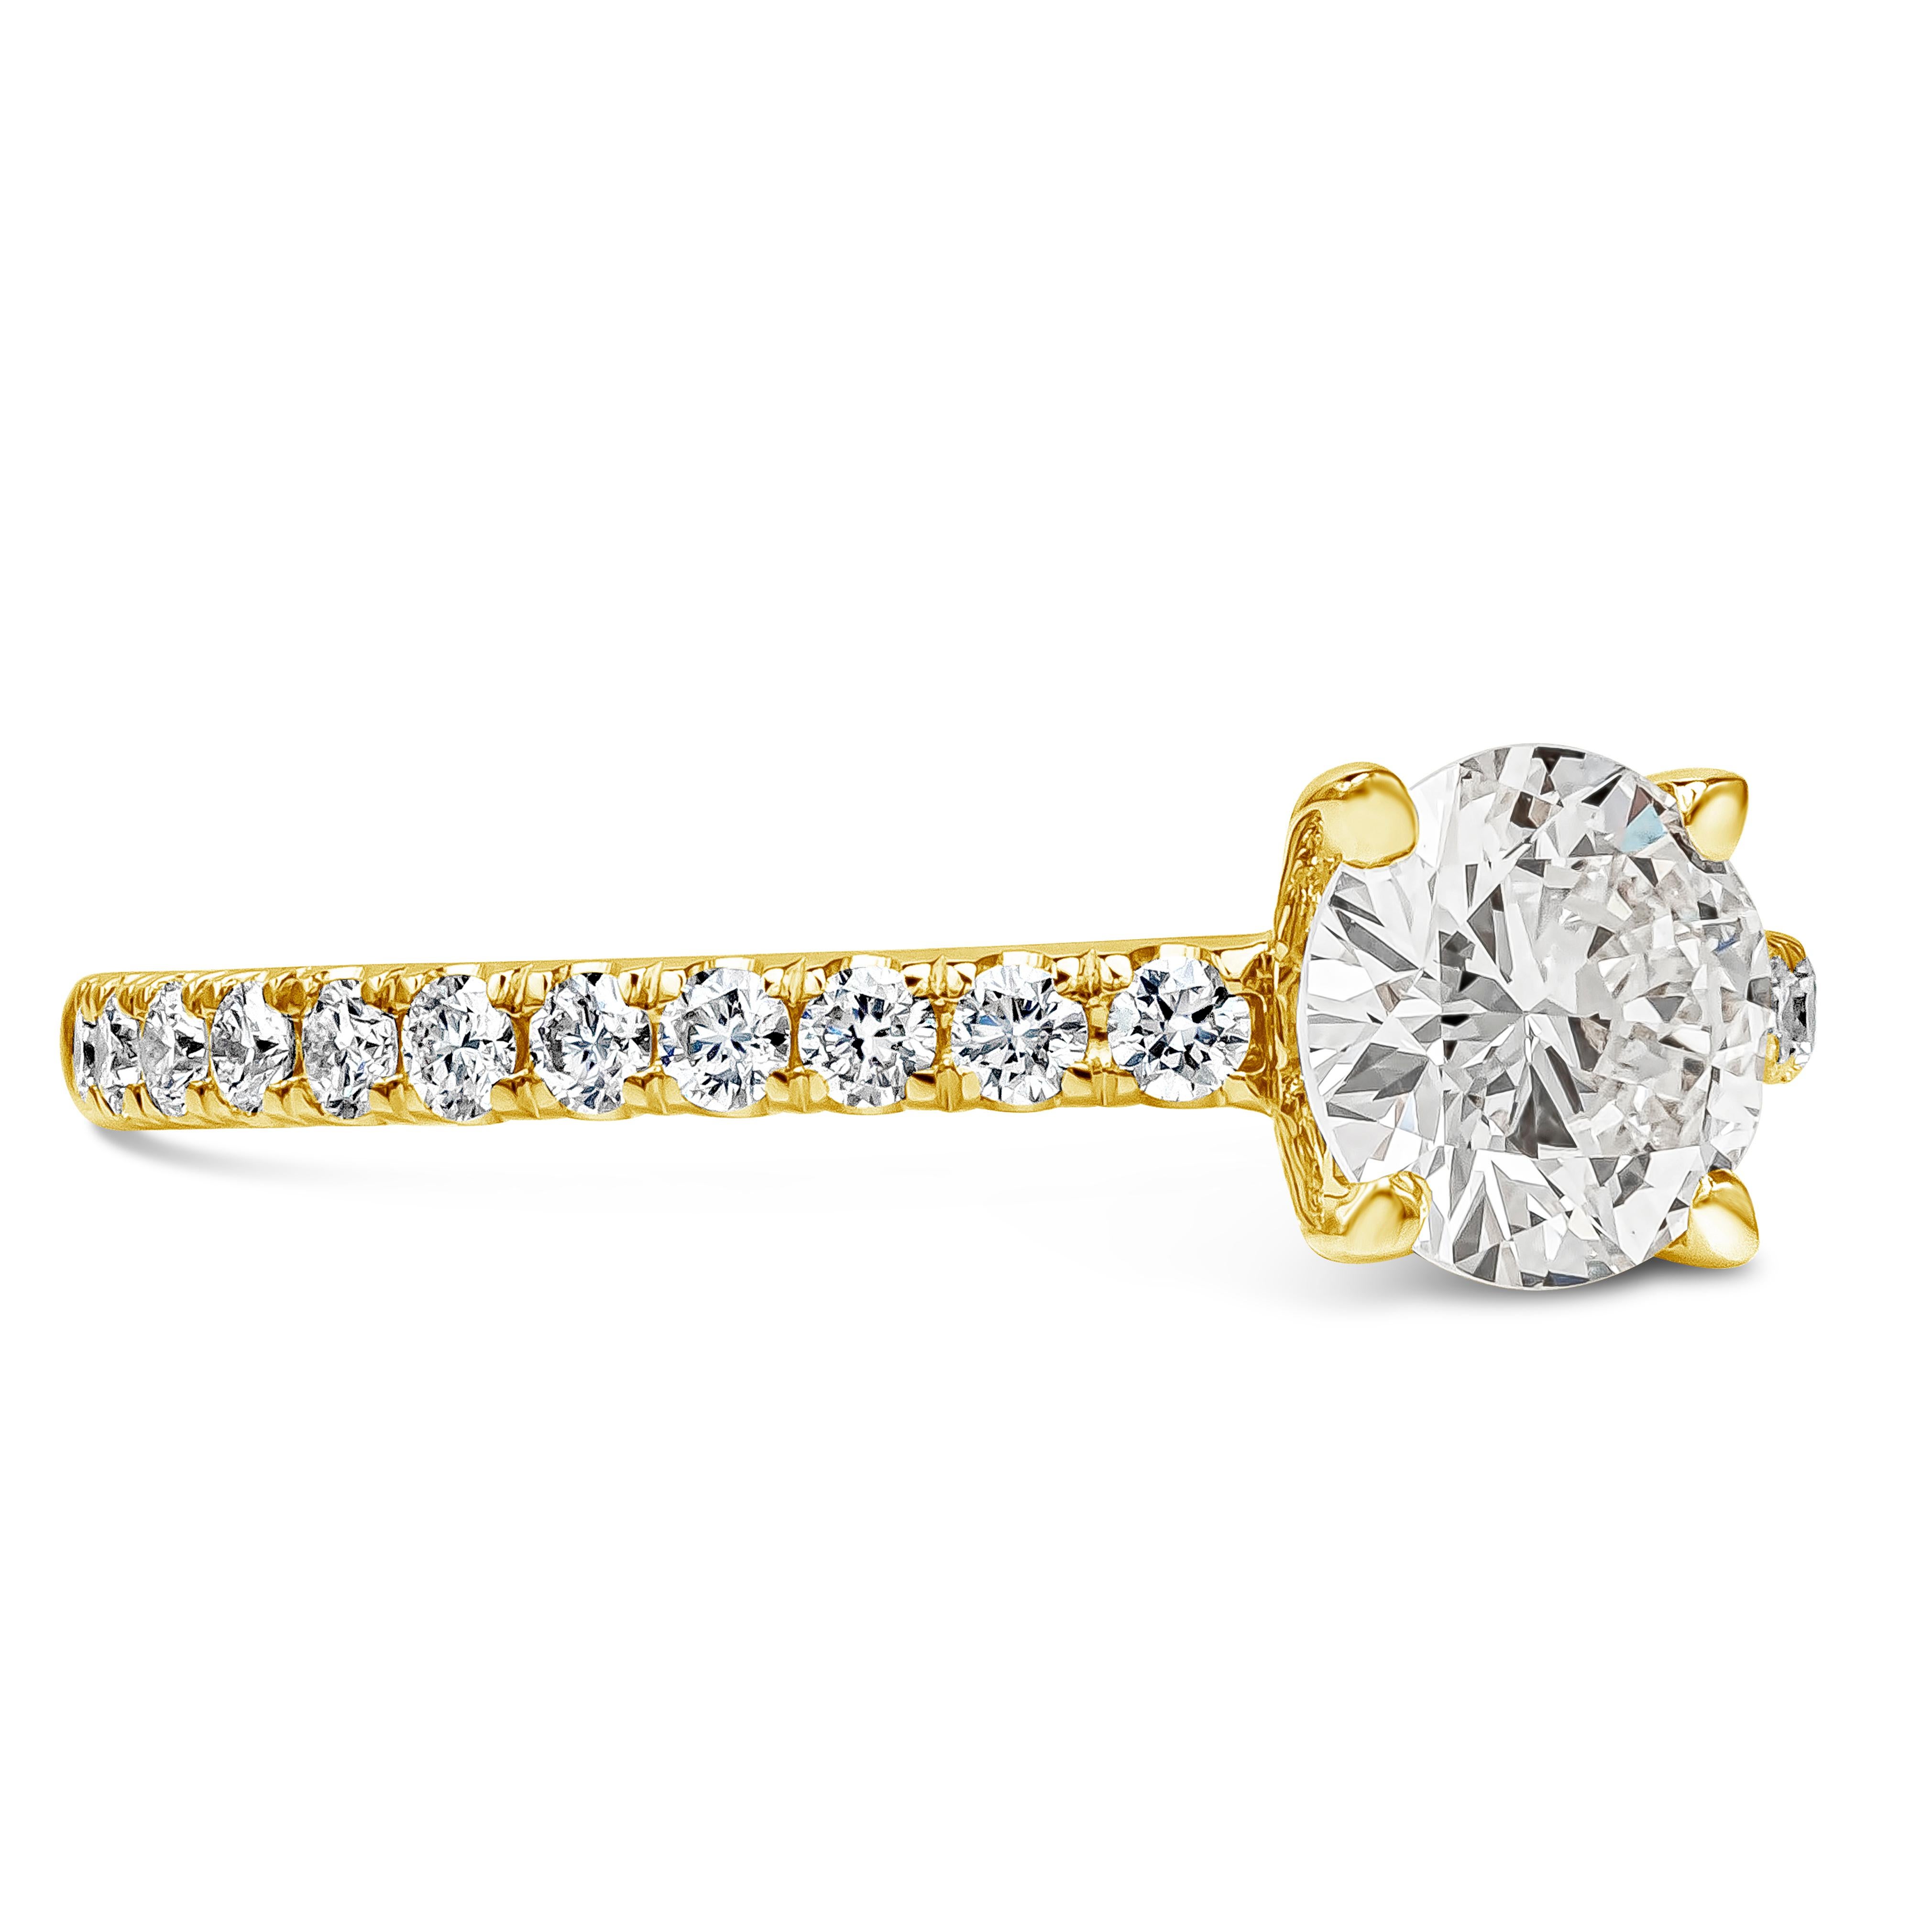 Un anillo de compromiso de estilo clásico que luce un diamante brillante redondo de 0,73 quilates certificado por el GIA como de color I y claridad VS1. El diamante central está engastado en un pulido engaste de oro amarillo de 18k acentuado con